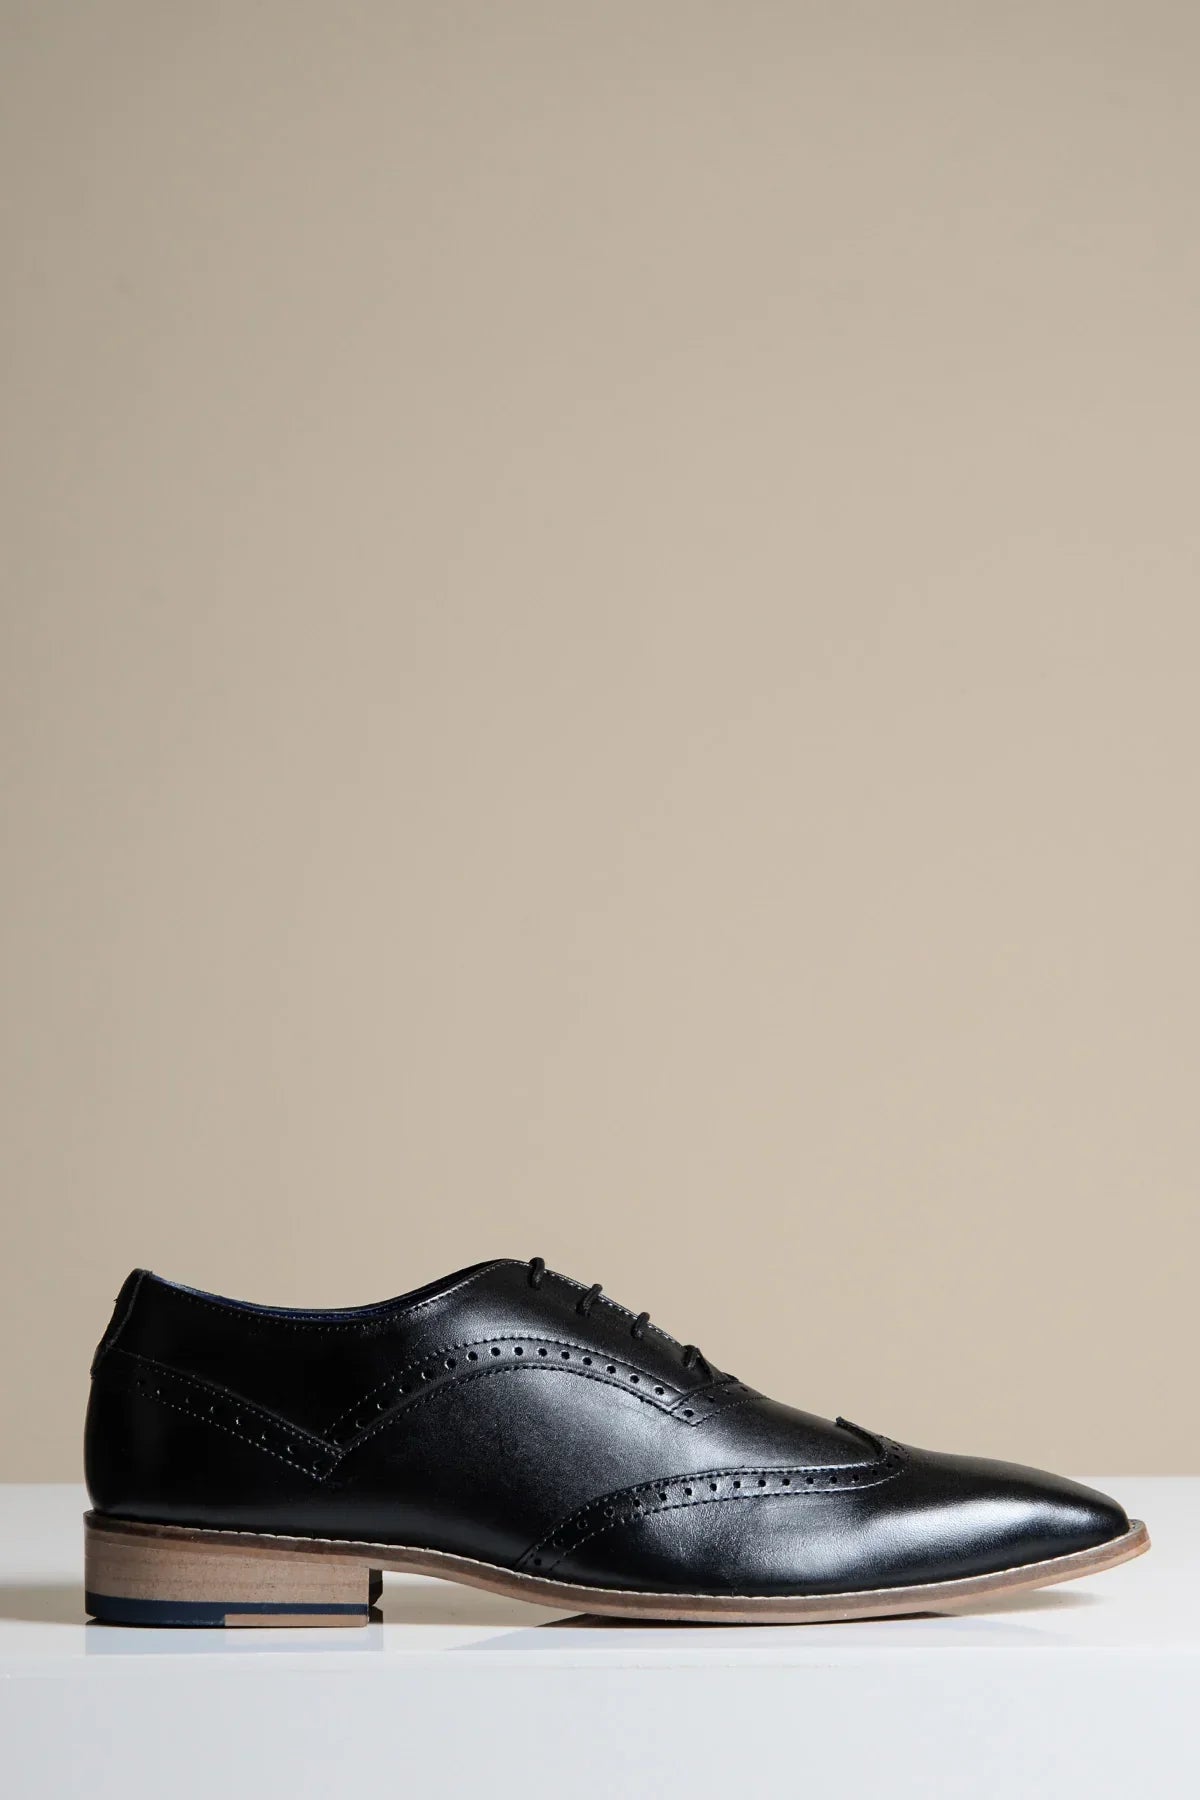 Čierne kožené topánky, Marc Darcy Dawson - krídlový vzor s dierkami